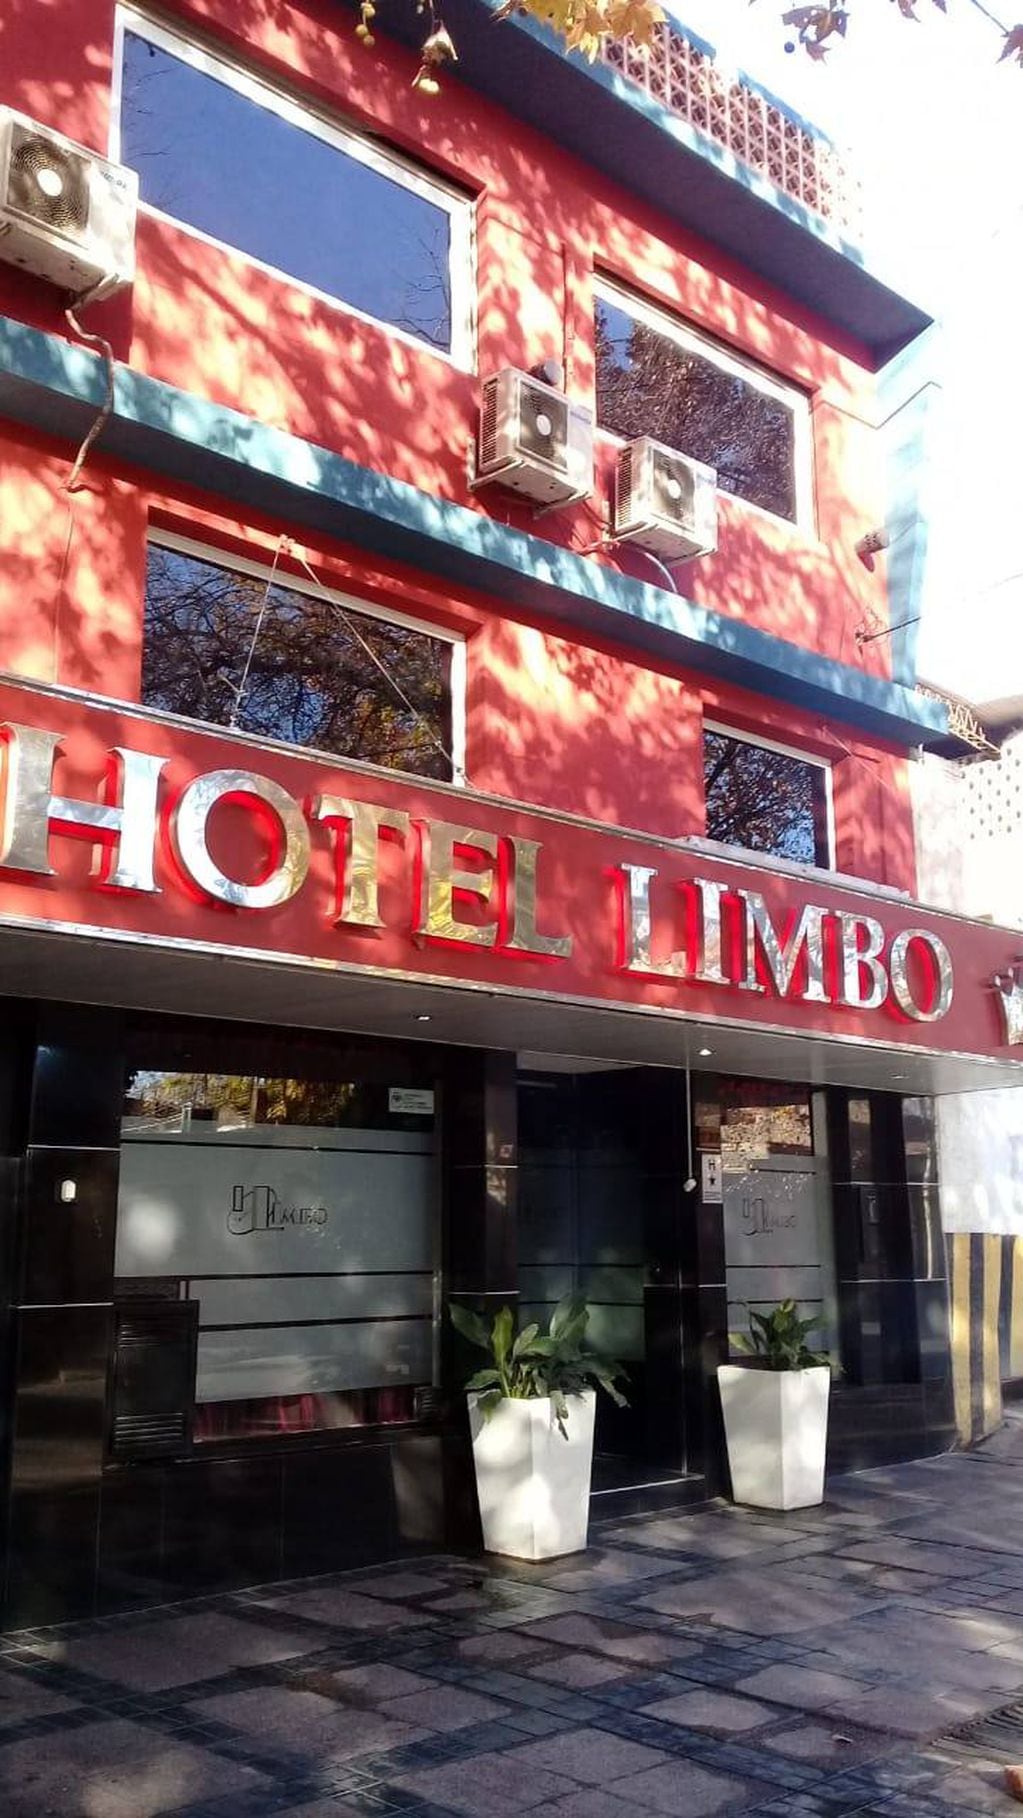 Hotel Limbo de Ciudad. Foto: Facebook / HOTEL LIMBO